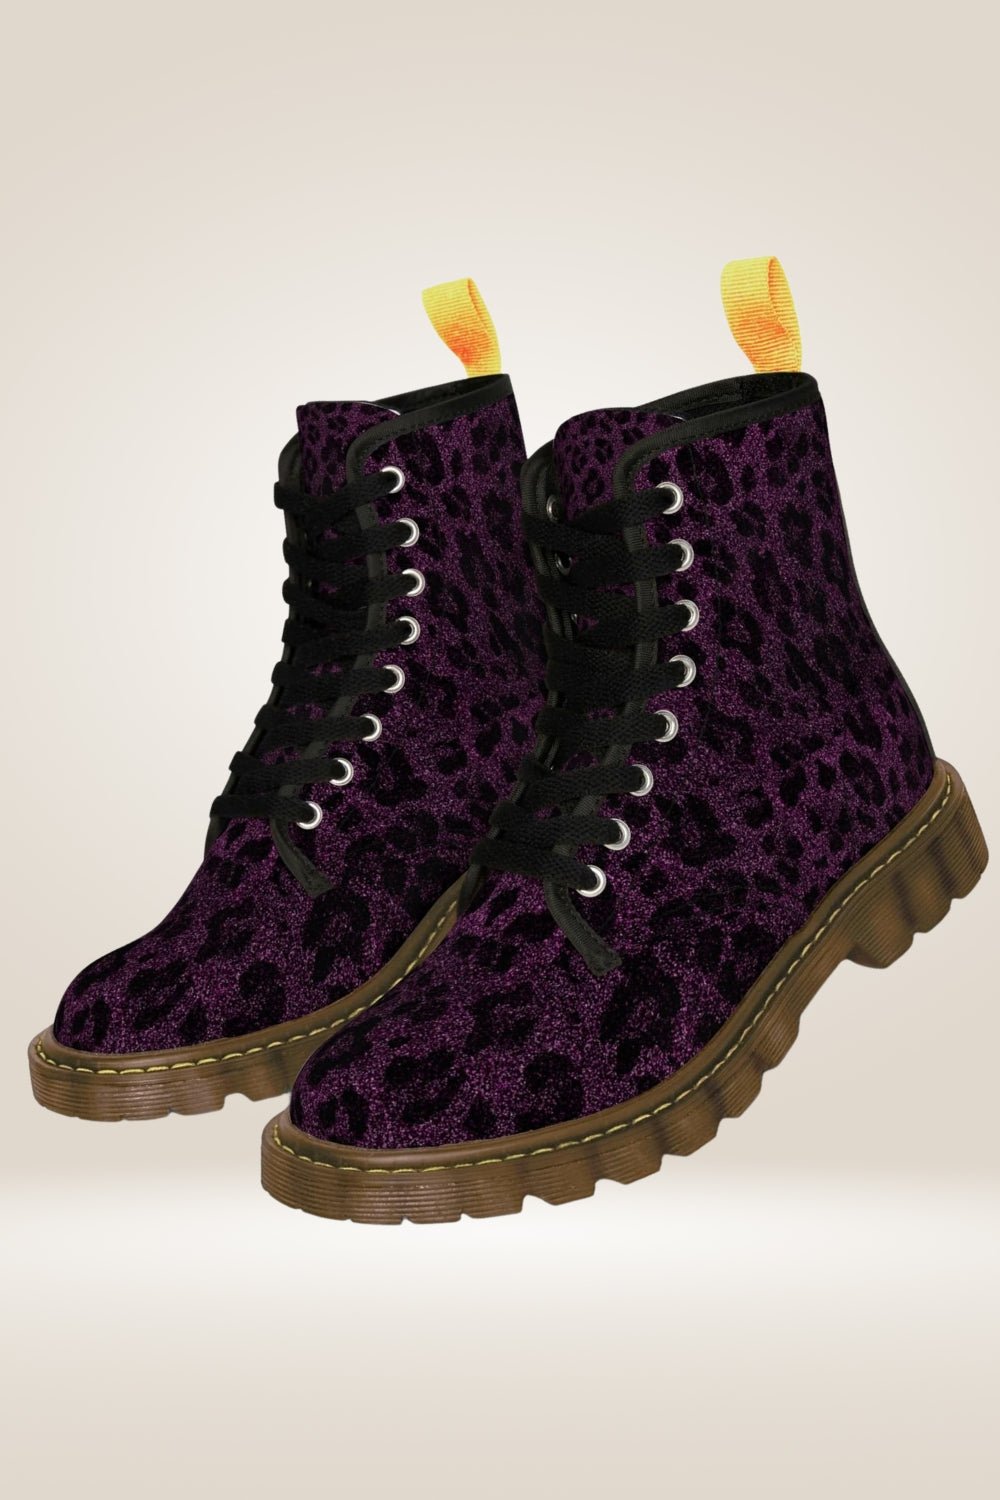 Glitter Print Purple Combat Boots - Brown Sole - TGC Boutique - Combat Boots